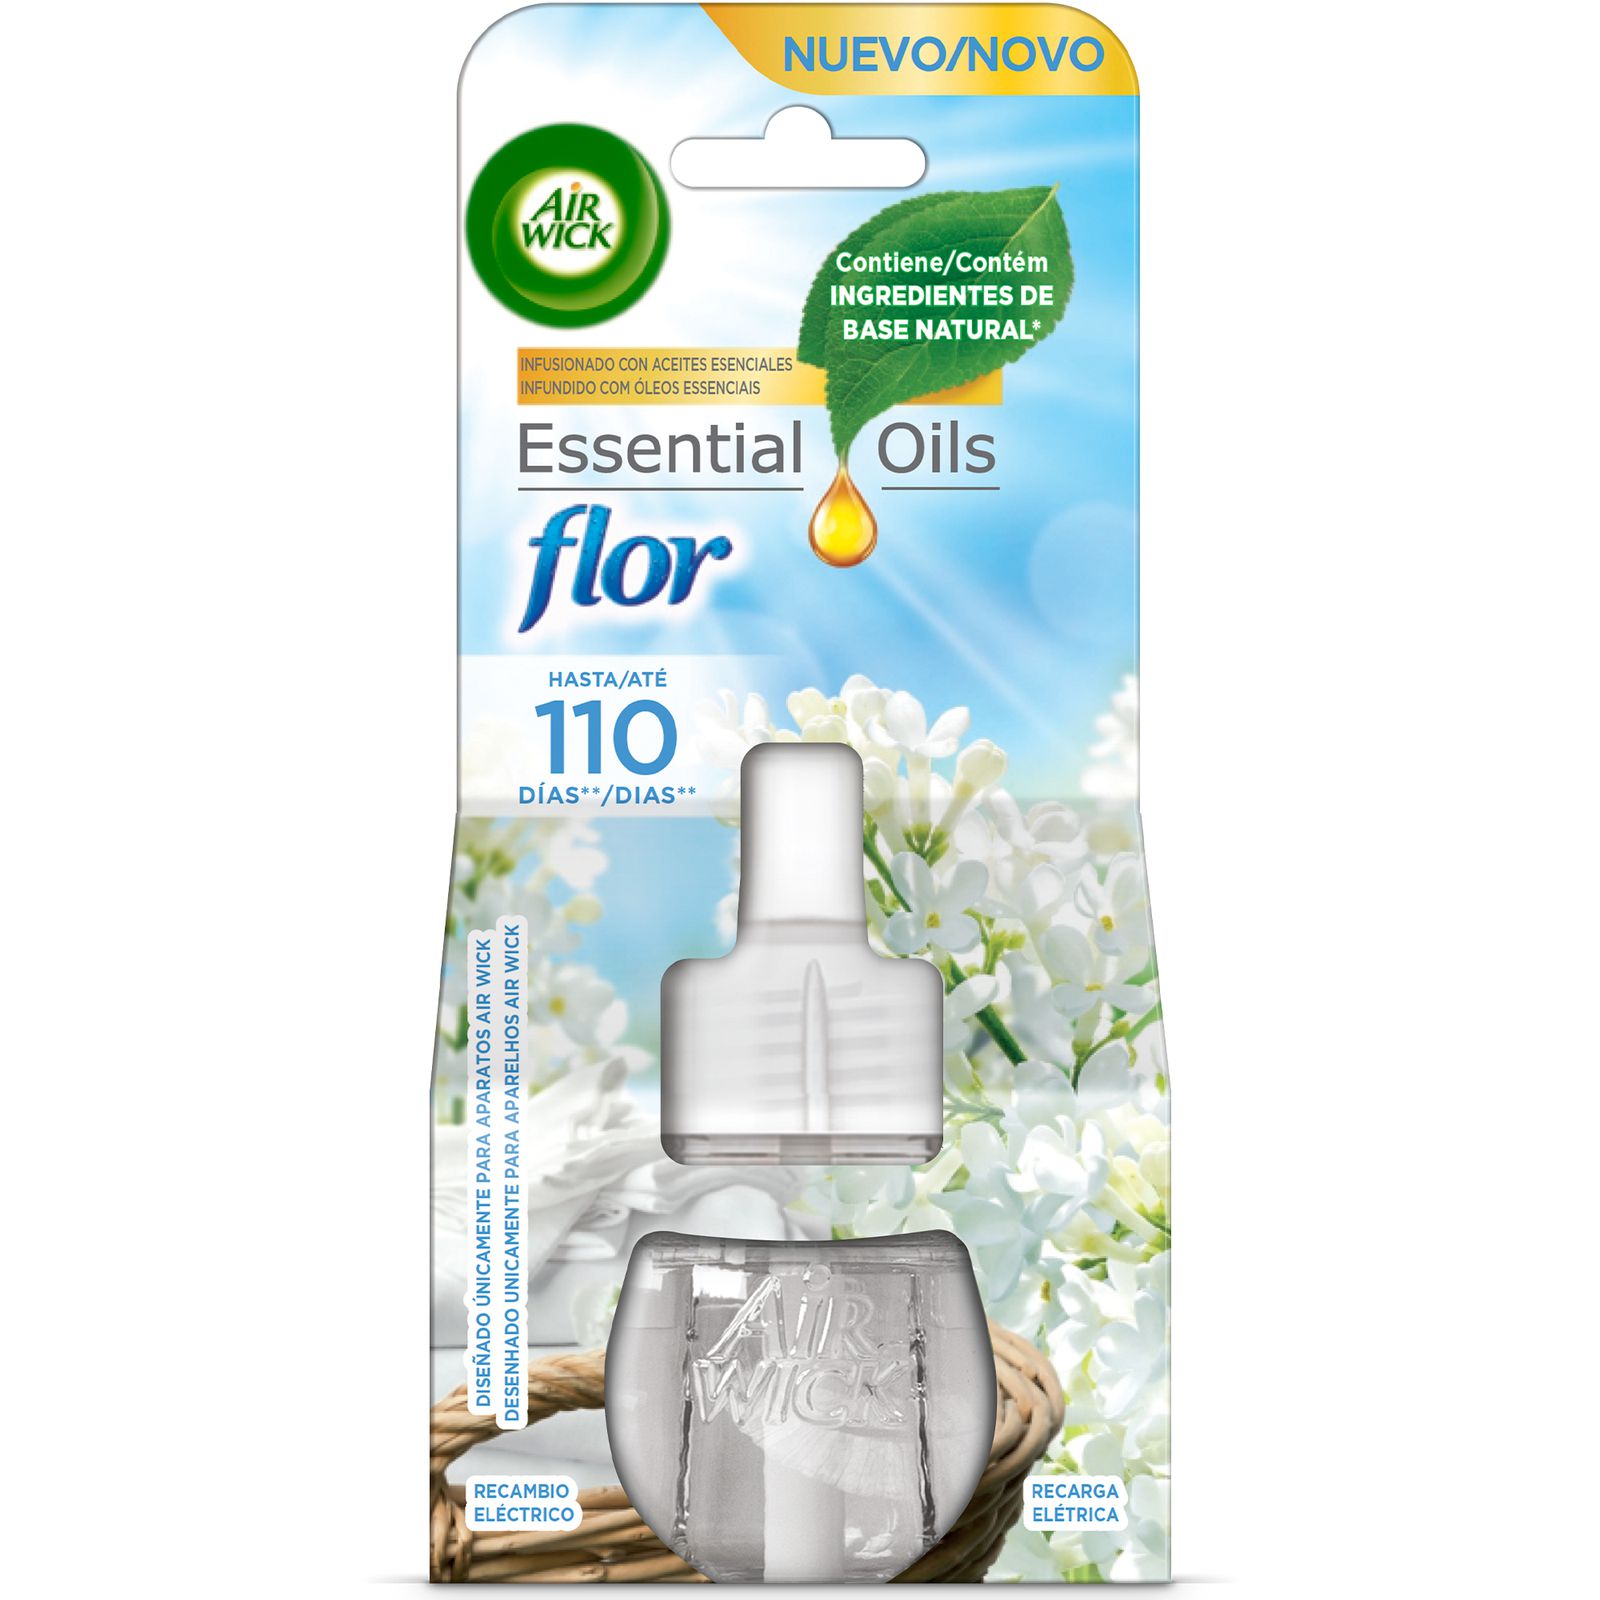 Pure Flor Ambientador Recambio Freshmatic, 375 ml - air-wick